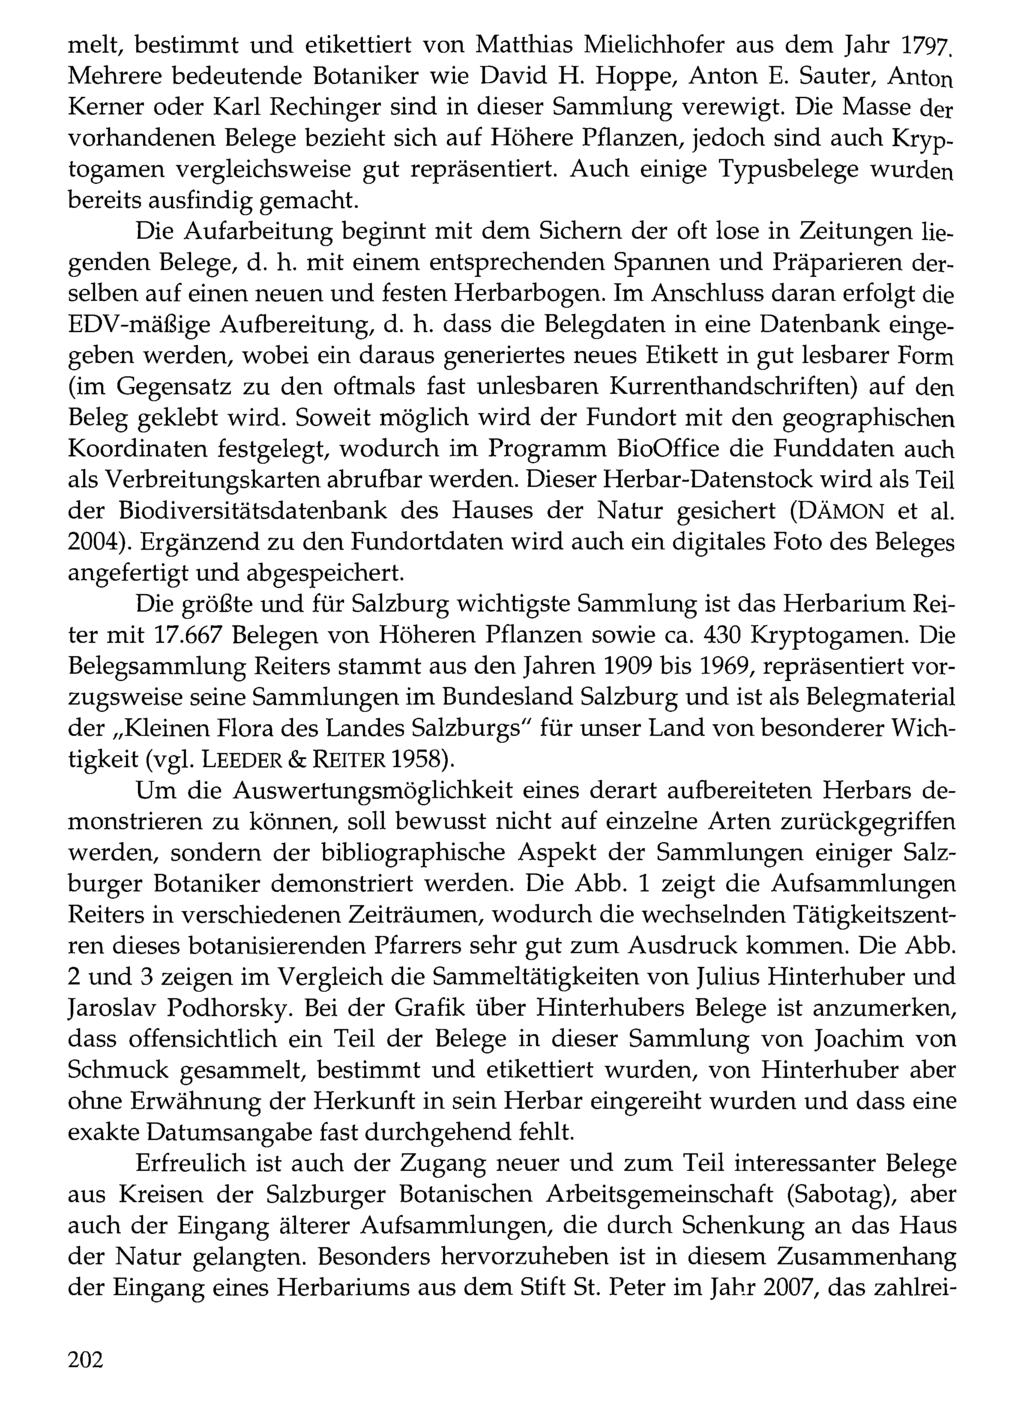 melt, bestimmt Verlag und Alexander etikettiert Just: Dorfbeuern von - Salzburg Matthias - Brüssel; download Mielichhofer unter www.biologiezentrum.at aus dem Jahr 1797.